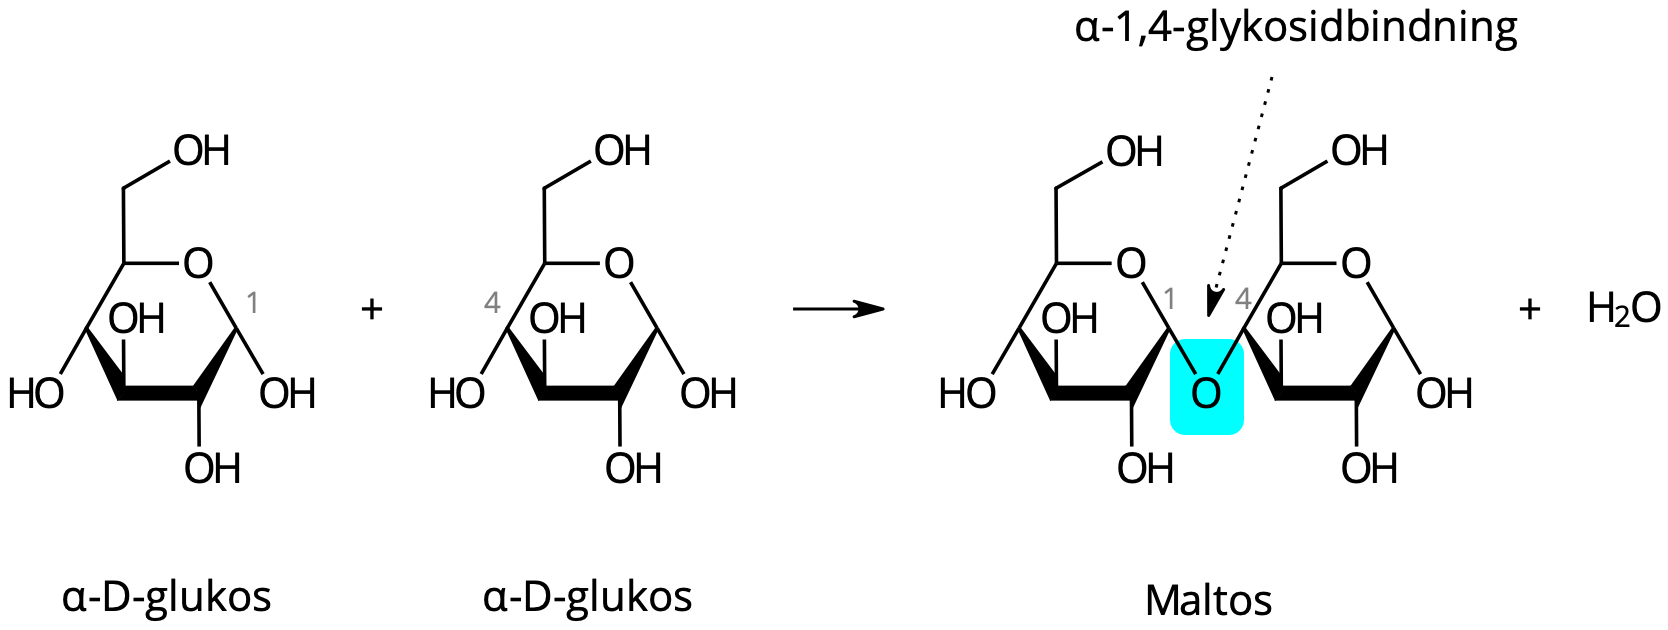 Två α-D-glukosmolekyler kondenseras och bildar maltos.